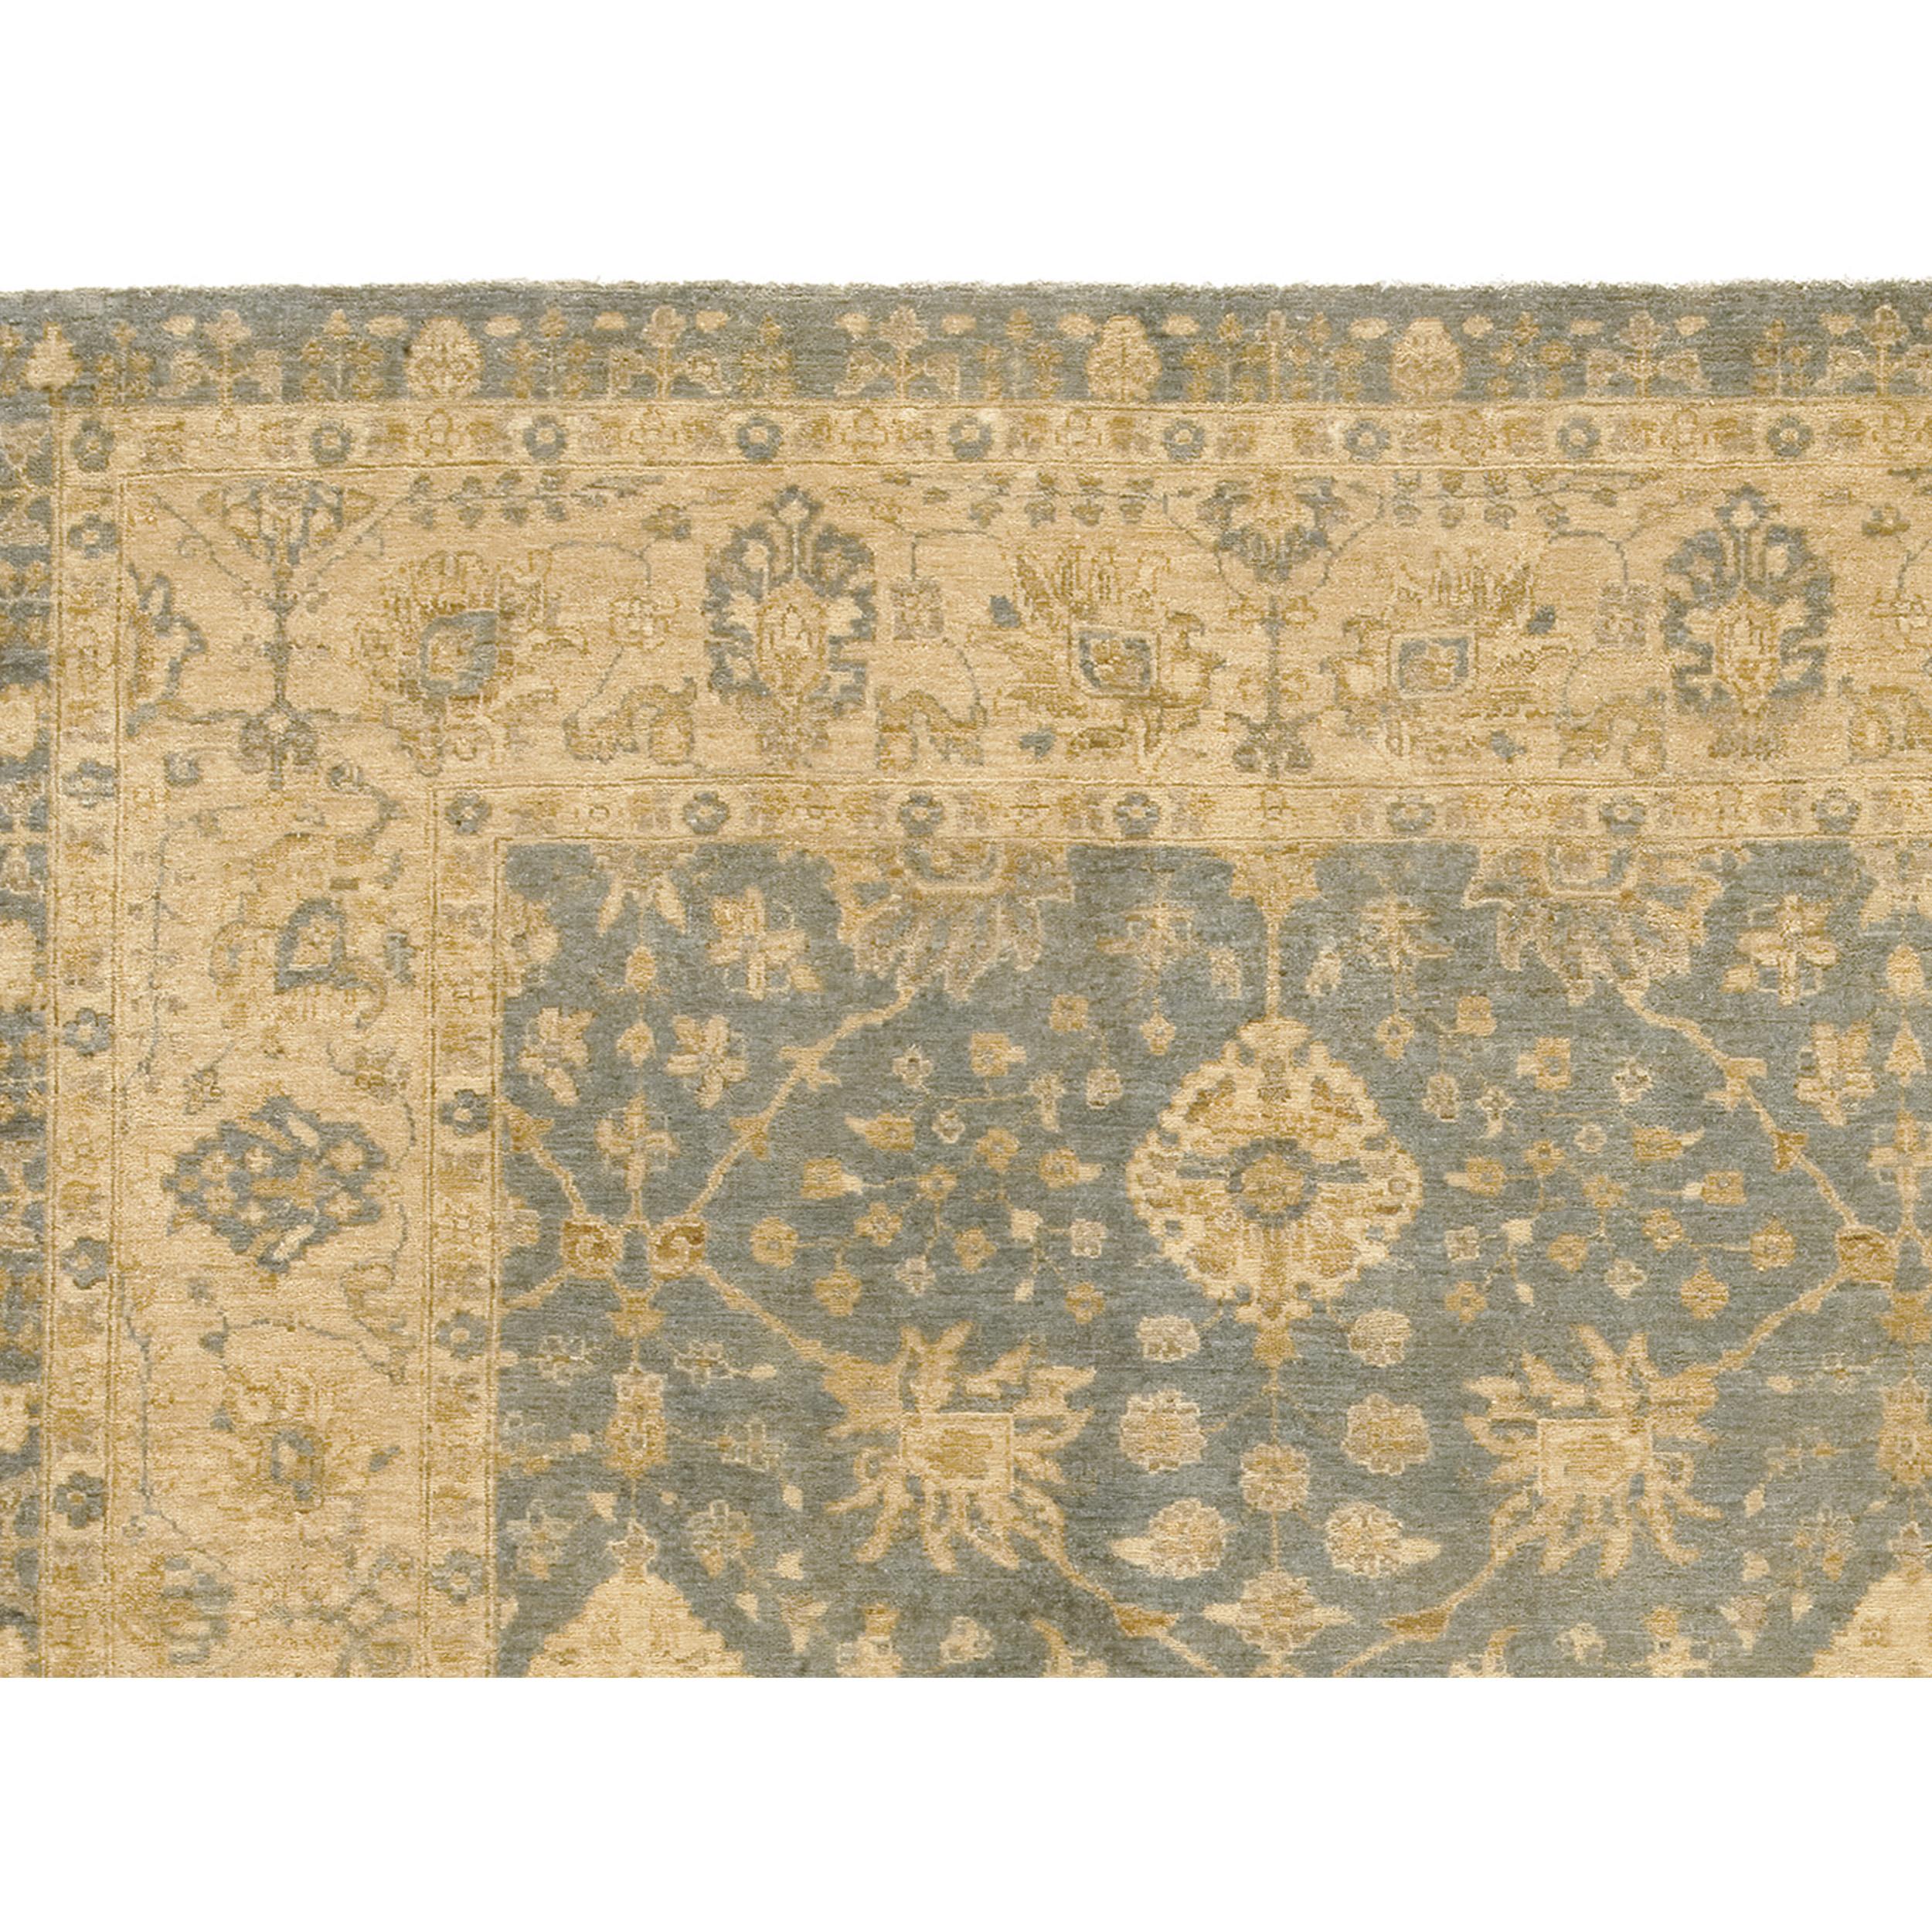 Ce tapis exquis tissé à la main provient des maîtres artisans du Pakistan, où des générations de savoir-faire en matière de tissage et une profonde appréciation de l'art de la fabrication des tapis se rejoignent. La laine utilisée est de la plus